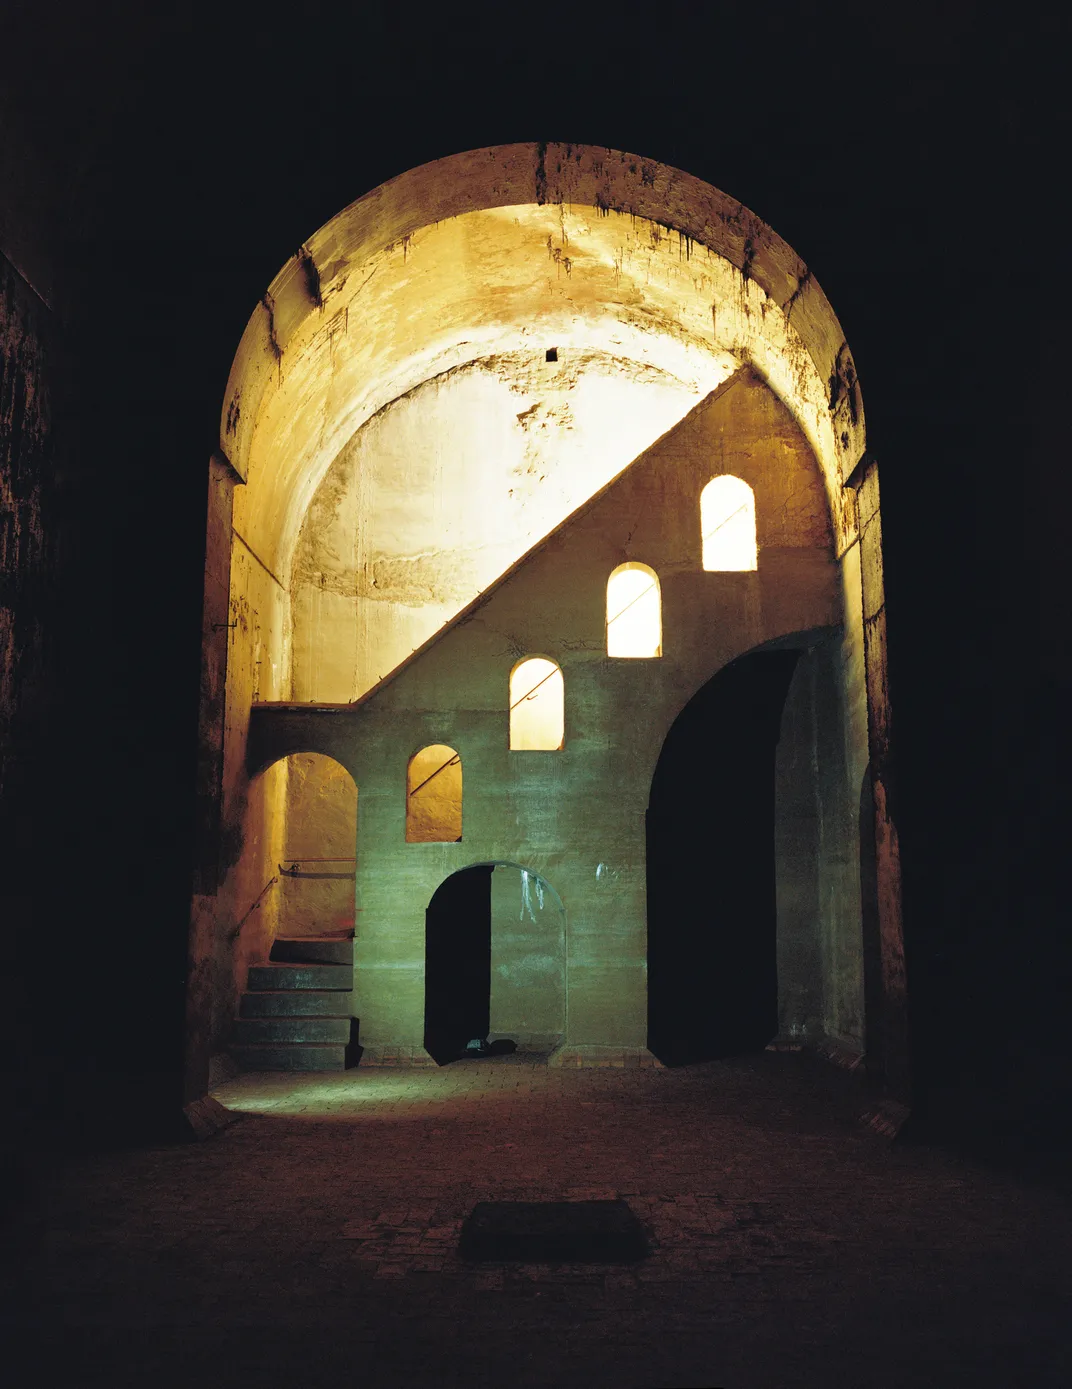 a dark underground passage shows an illuminated staircase